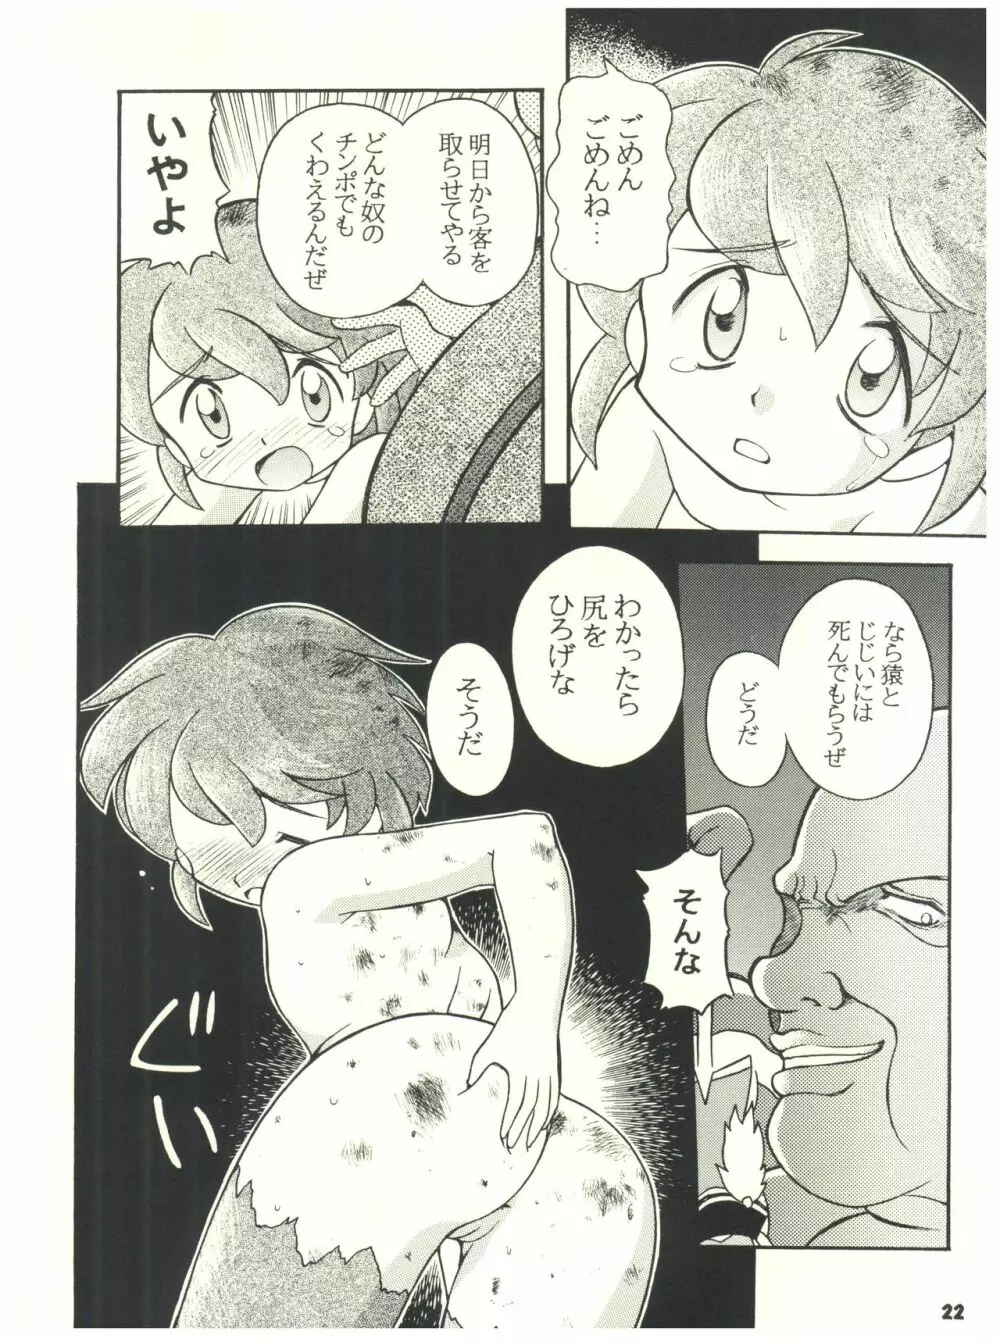 燕雀 Volume 2 - page22